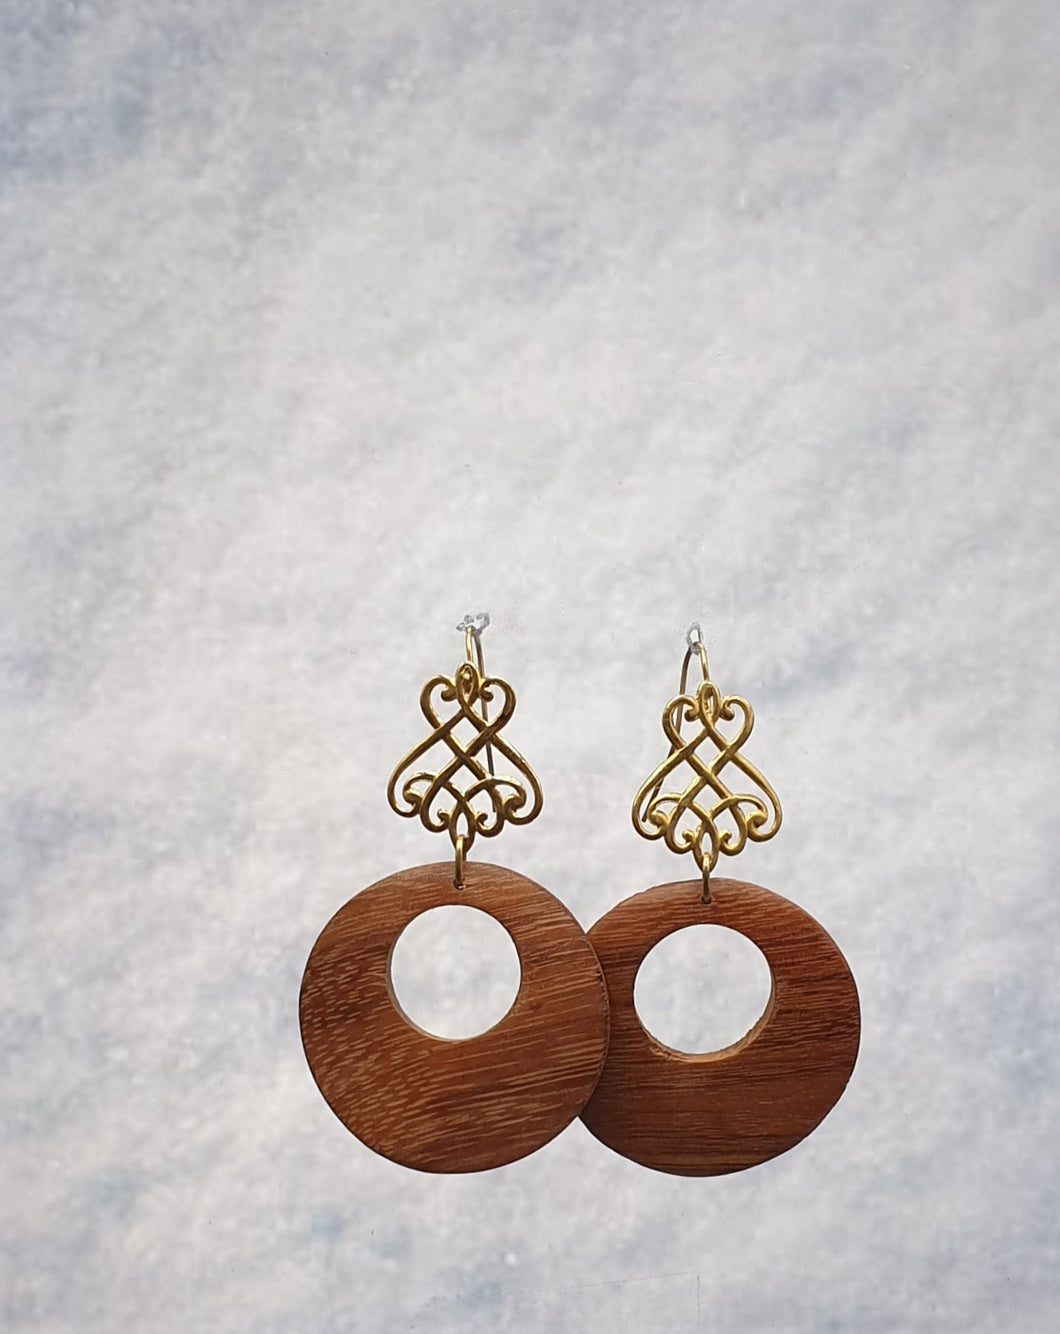 NUOVI orecchini pendenti in metallo dorato con elemento in legno marrone